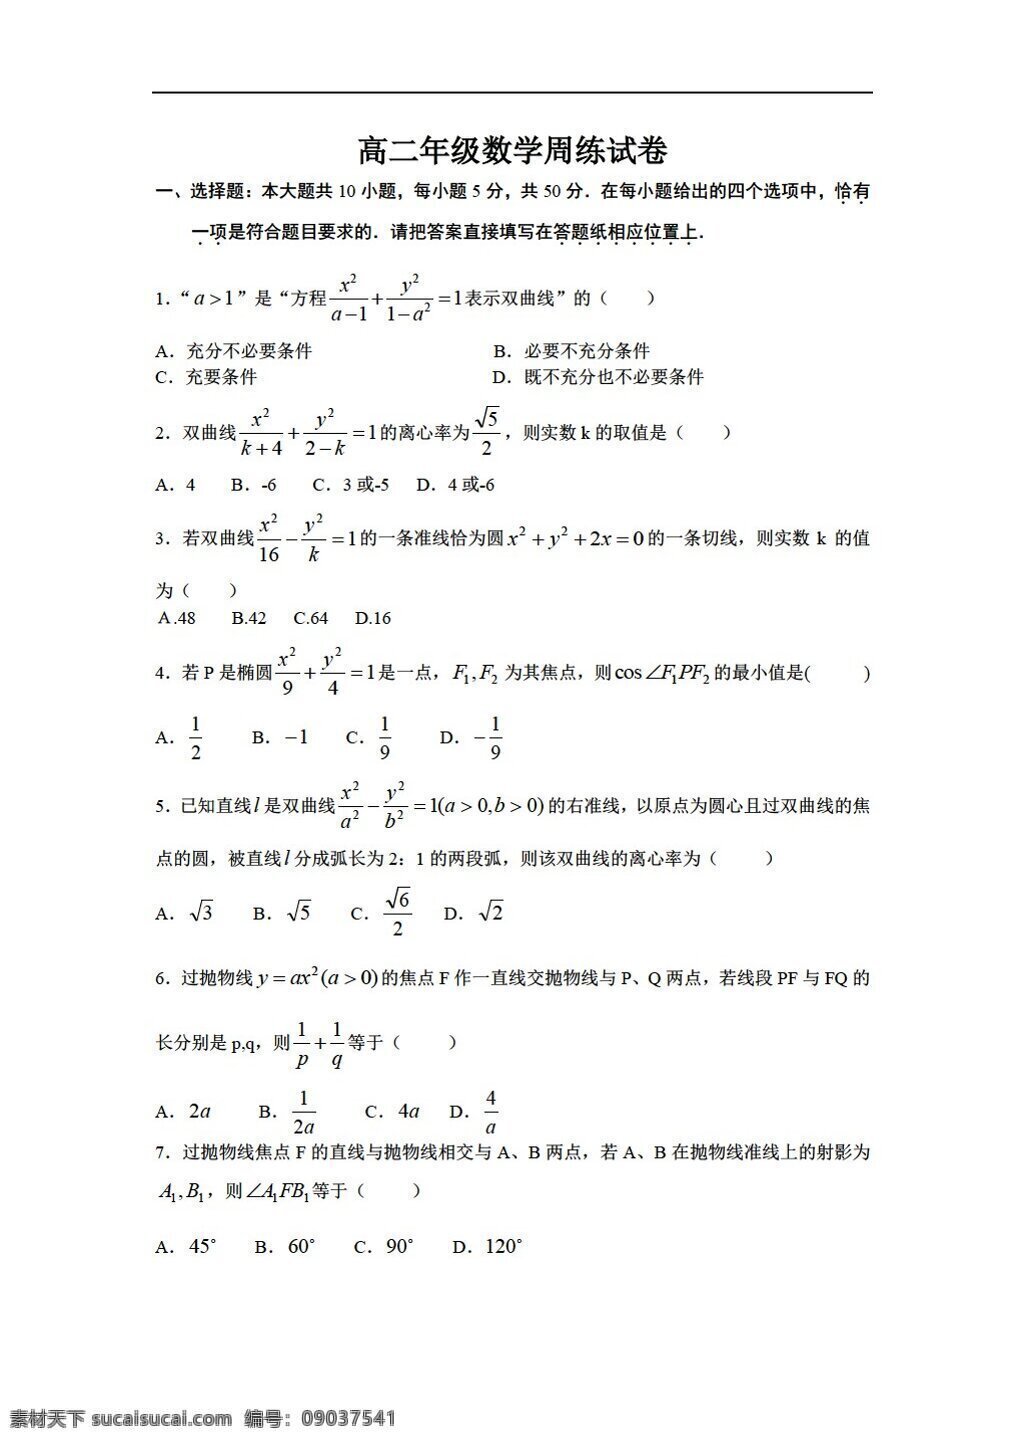 数学 苏 教 版 泰兴市 二 高级中学 测试 选修 苏教版 选修1 试卷